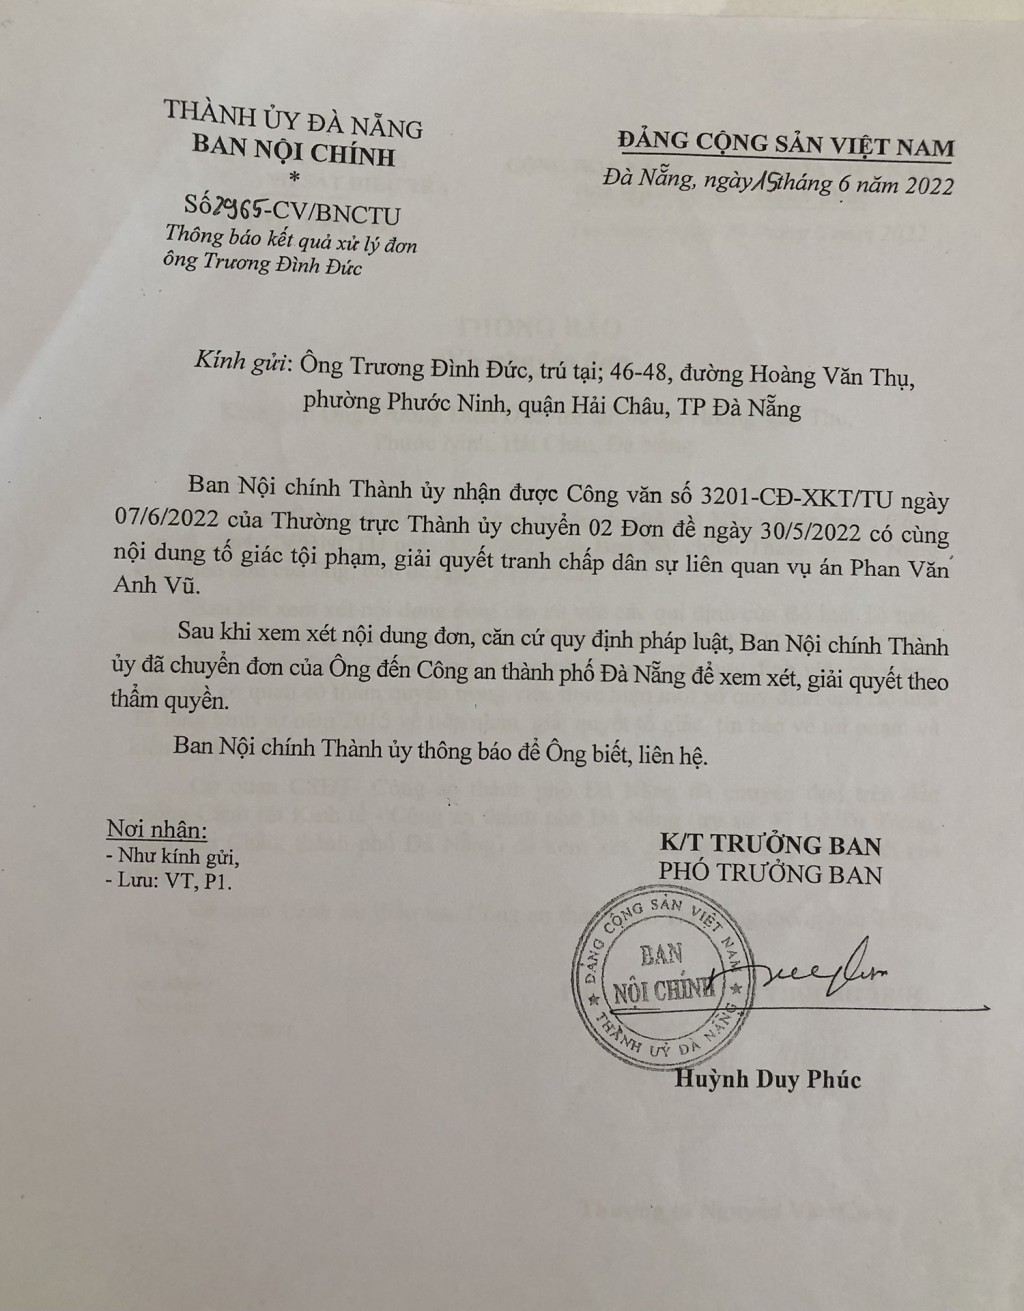 Công văn của Ban Nội chính Thành ủy Đà Nẵng ngày 15/6/2022 cho biết đã nhận được 2 đơn tố giác tội phạm của ông Đức đề ngày 30/5/2022